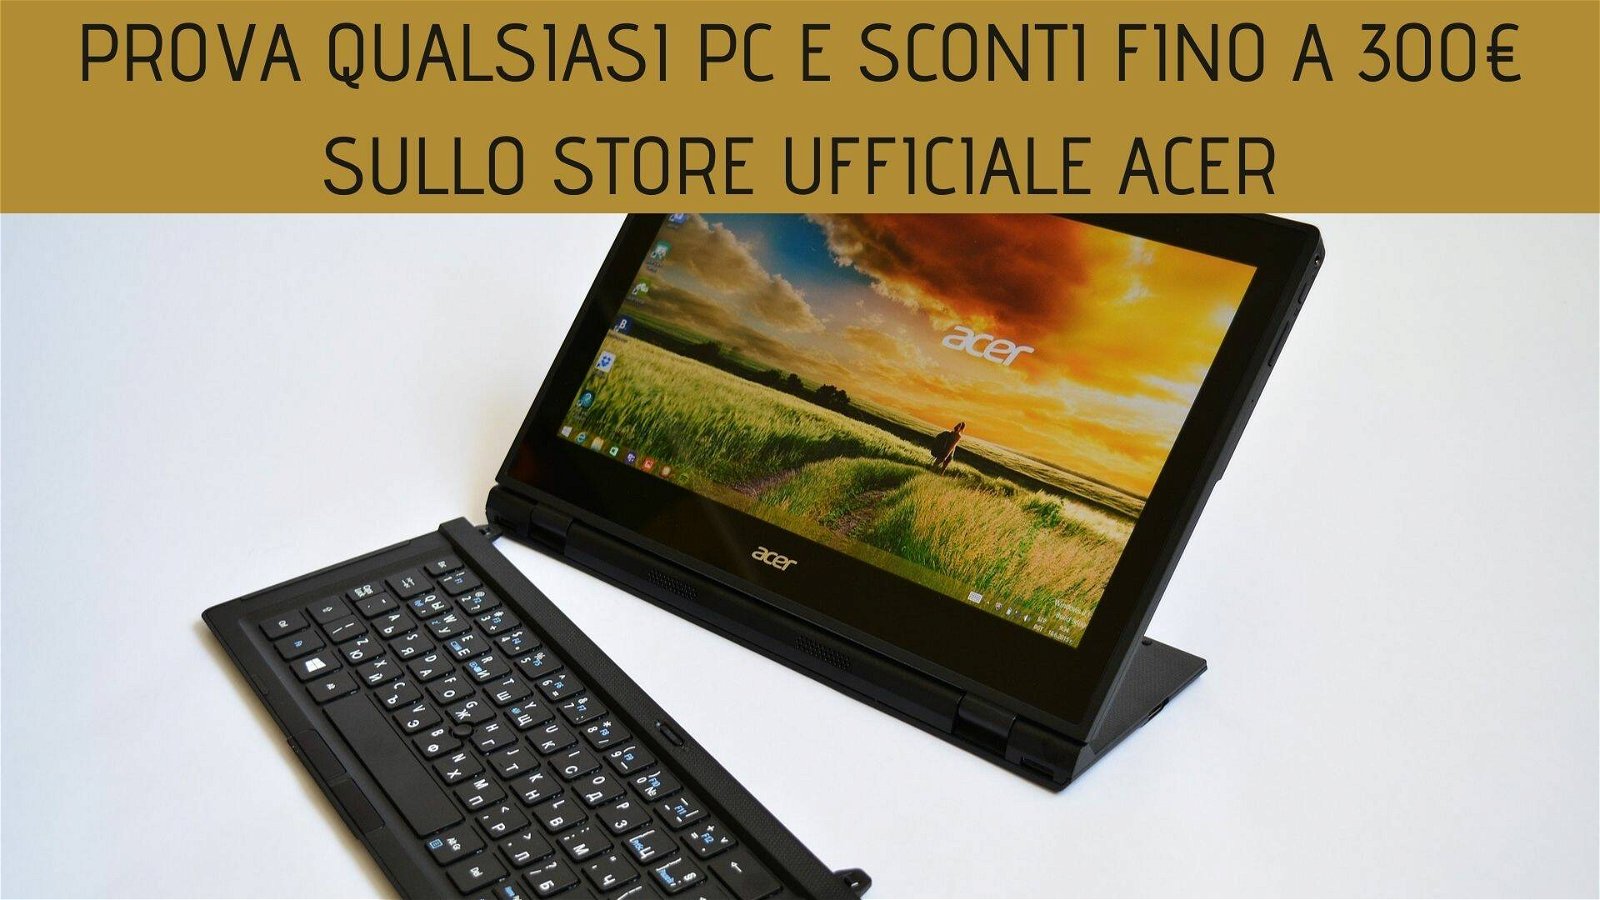 Immagine di Acer: prova qualsiasi computer per 30gg e sconti fino a 300€